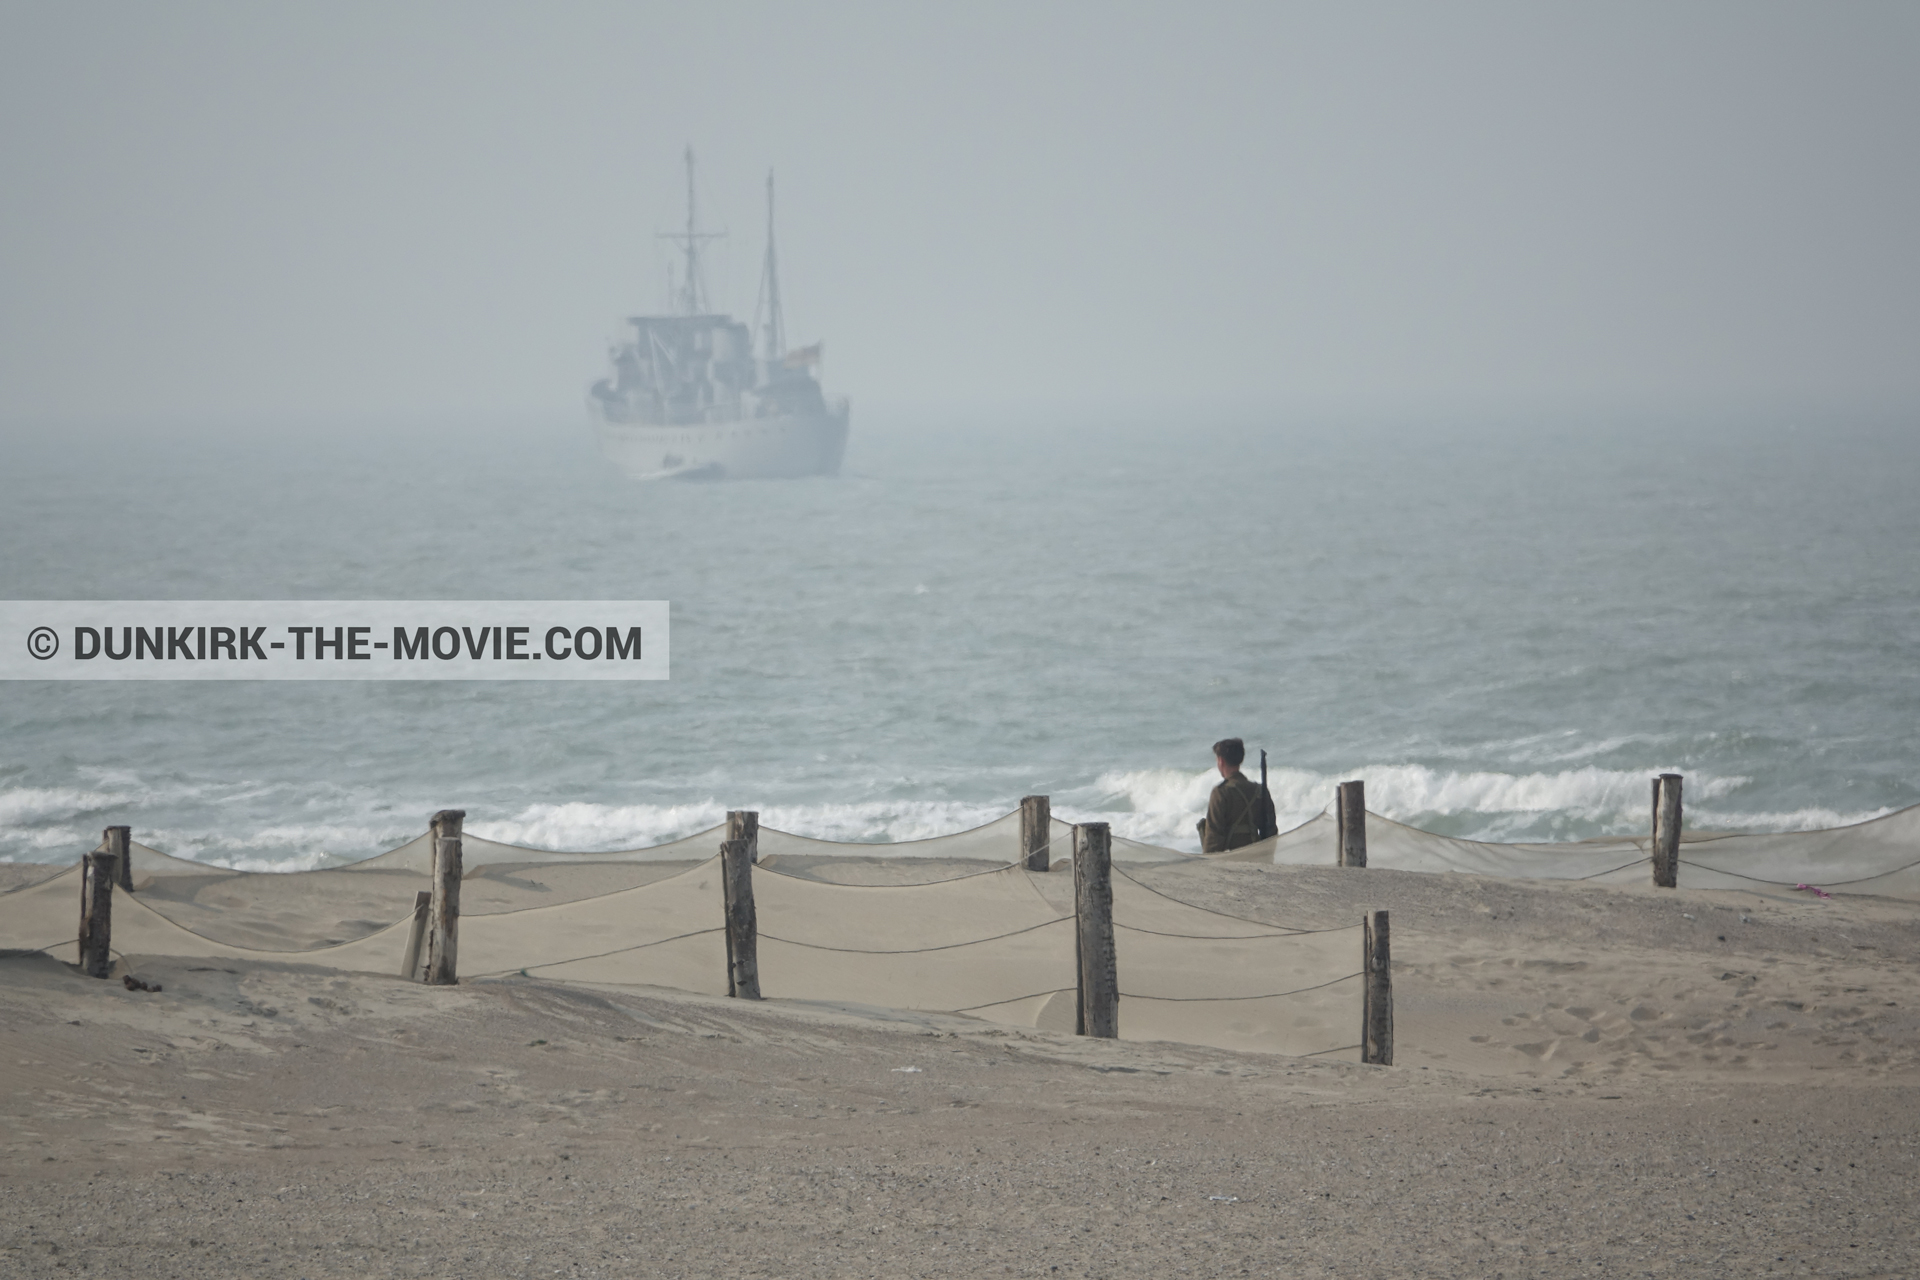 Photo avec bateau, ciel gris, figurants, mer agitée, plage,  des dessous du Film Dunkerque de Nolan